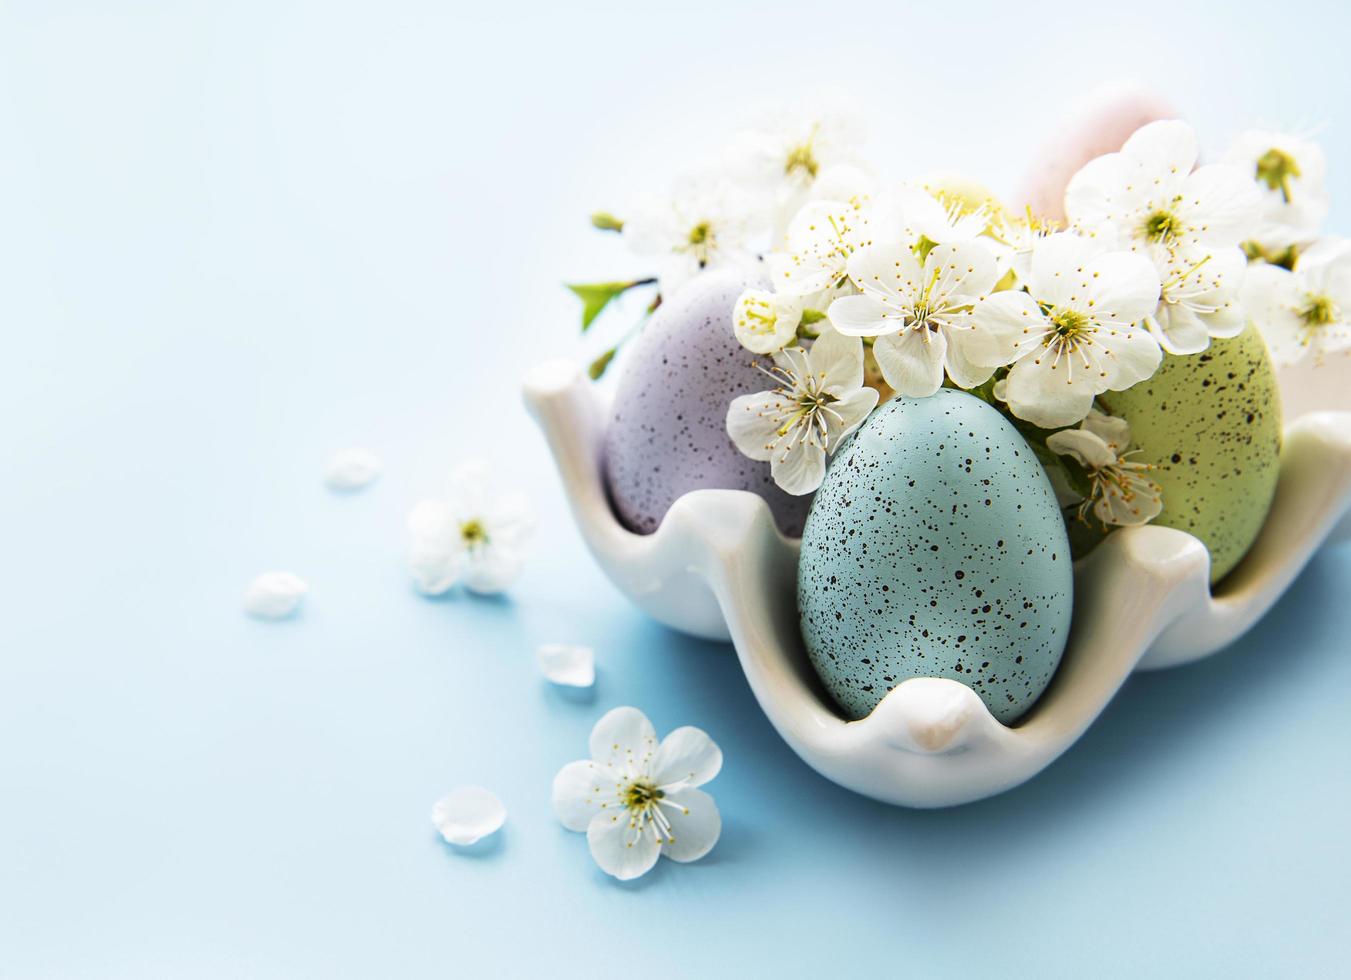 ovos de páscoa na bandeja de ovos e flor da primavera foto